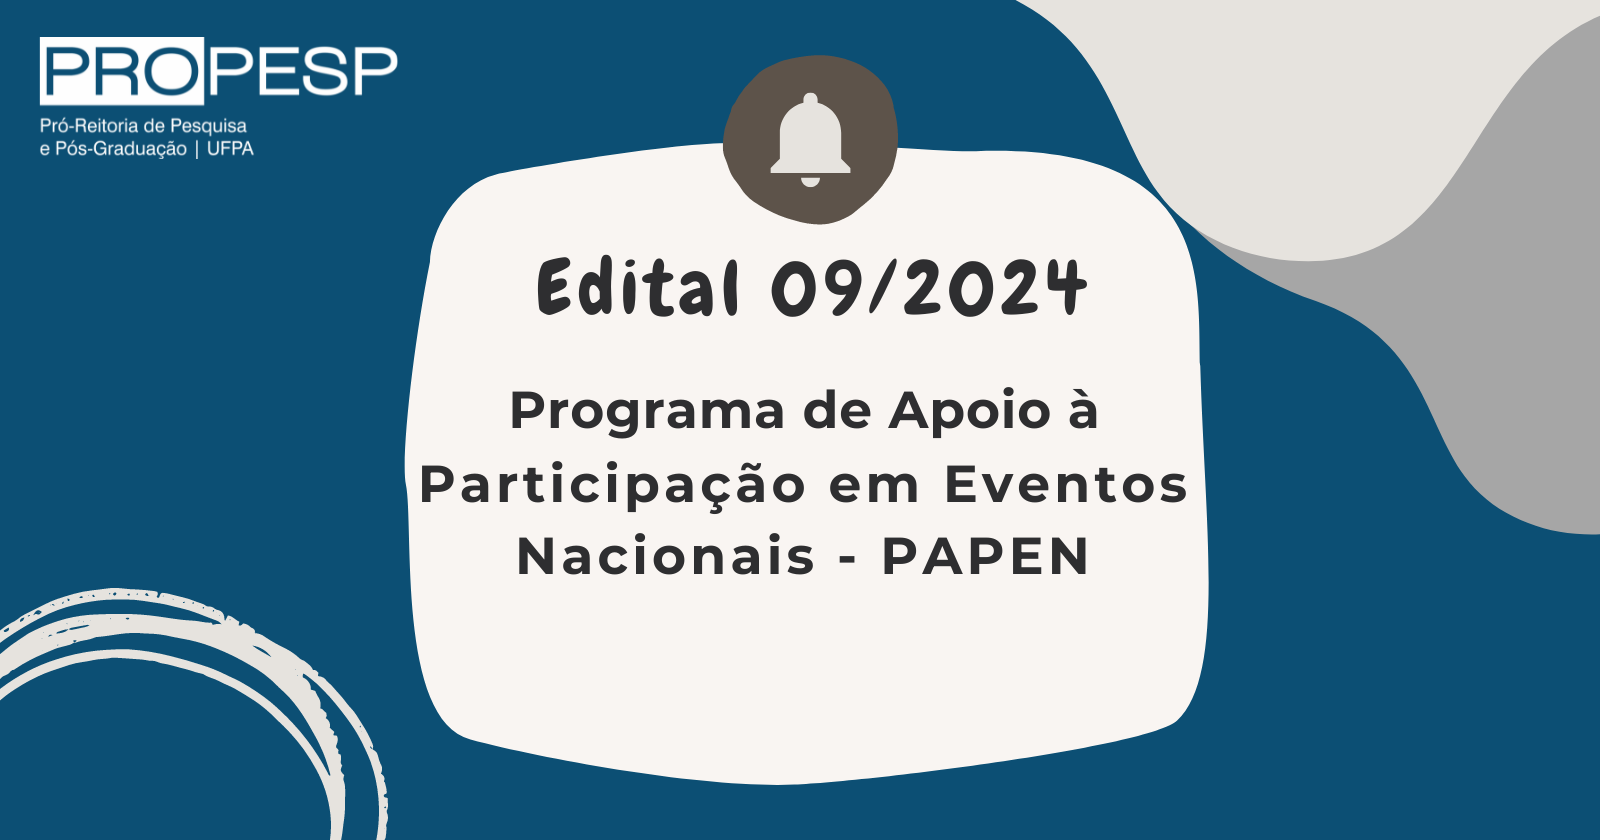 Edital 09/2024 - Programa de Apoio à Participação em Eventos Nacionais